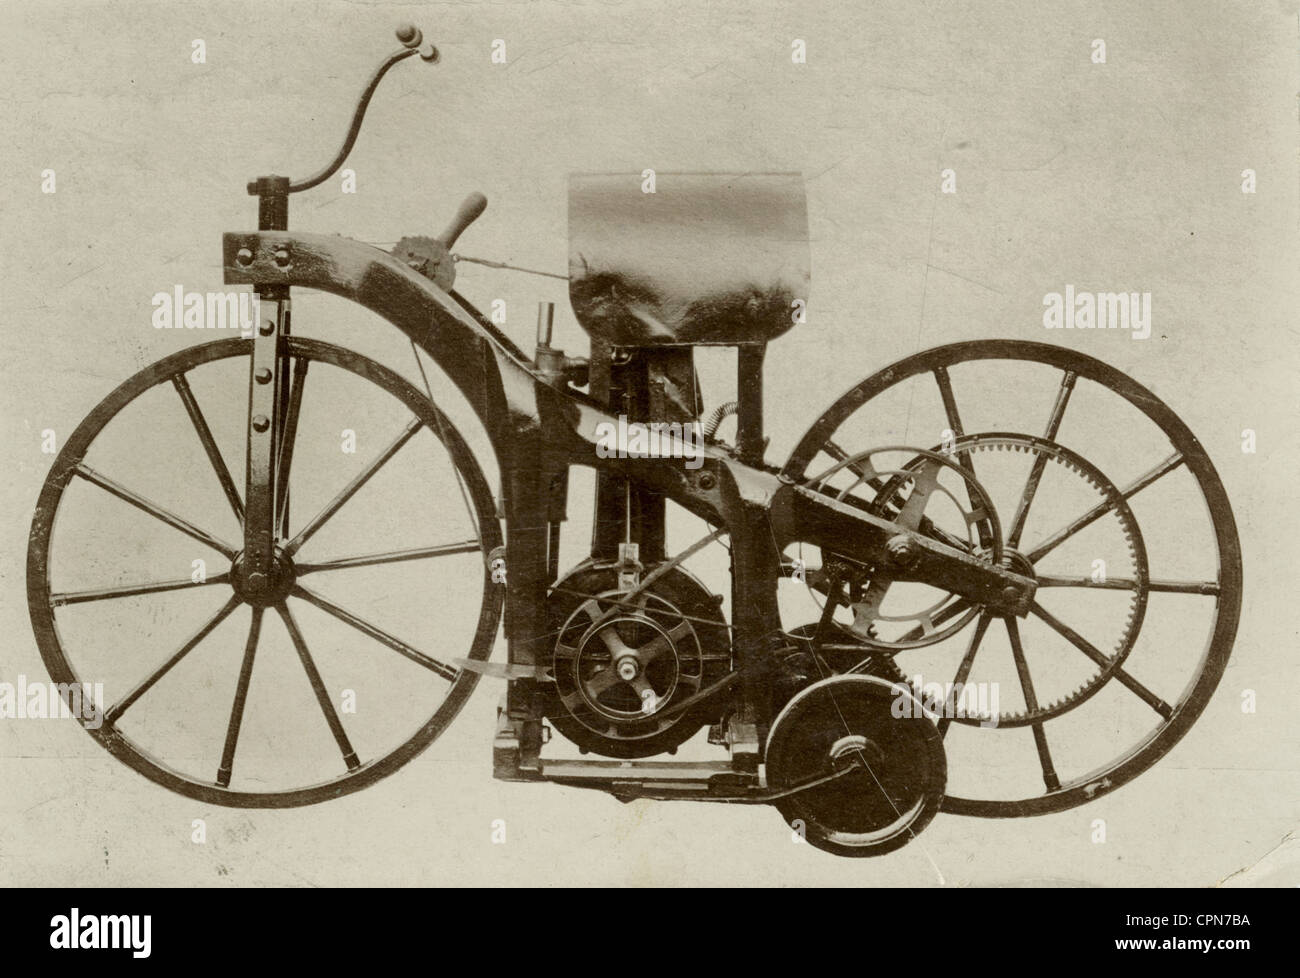 Transport,moto,première moto dans le monde,construit par Gottlieb Daimler et Wilhelm Maybach,breveté en tant que véhicule de montée en paraffine sur 29.8.1885,un cylindre,0.5 chevaux,moteur sous le siège en cuir,moteur ayant le surnom horloge de hall,cadre en bois,roue portante,roues avec pneus en métal,copie unique,ce premier inventeur a été détruit lors d'un incendie dans l'Imperial statt,1903,moteurs de combustion,brevets allemands,1885,brevets de combustion,brevets de combustion,brevets de combustion,non allemands,inventions de combustion,brevets de combustion,brevets de combustion,brevets de combustion,de combustion,de combustion de combustion de fabrication de voitures de voitures de voitures de combustion,Allemagne, Disponible Banque D'Images